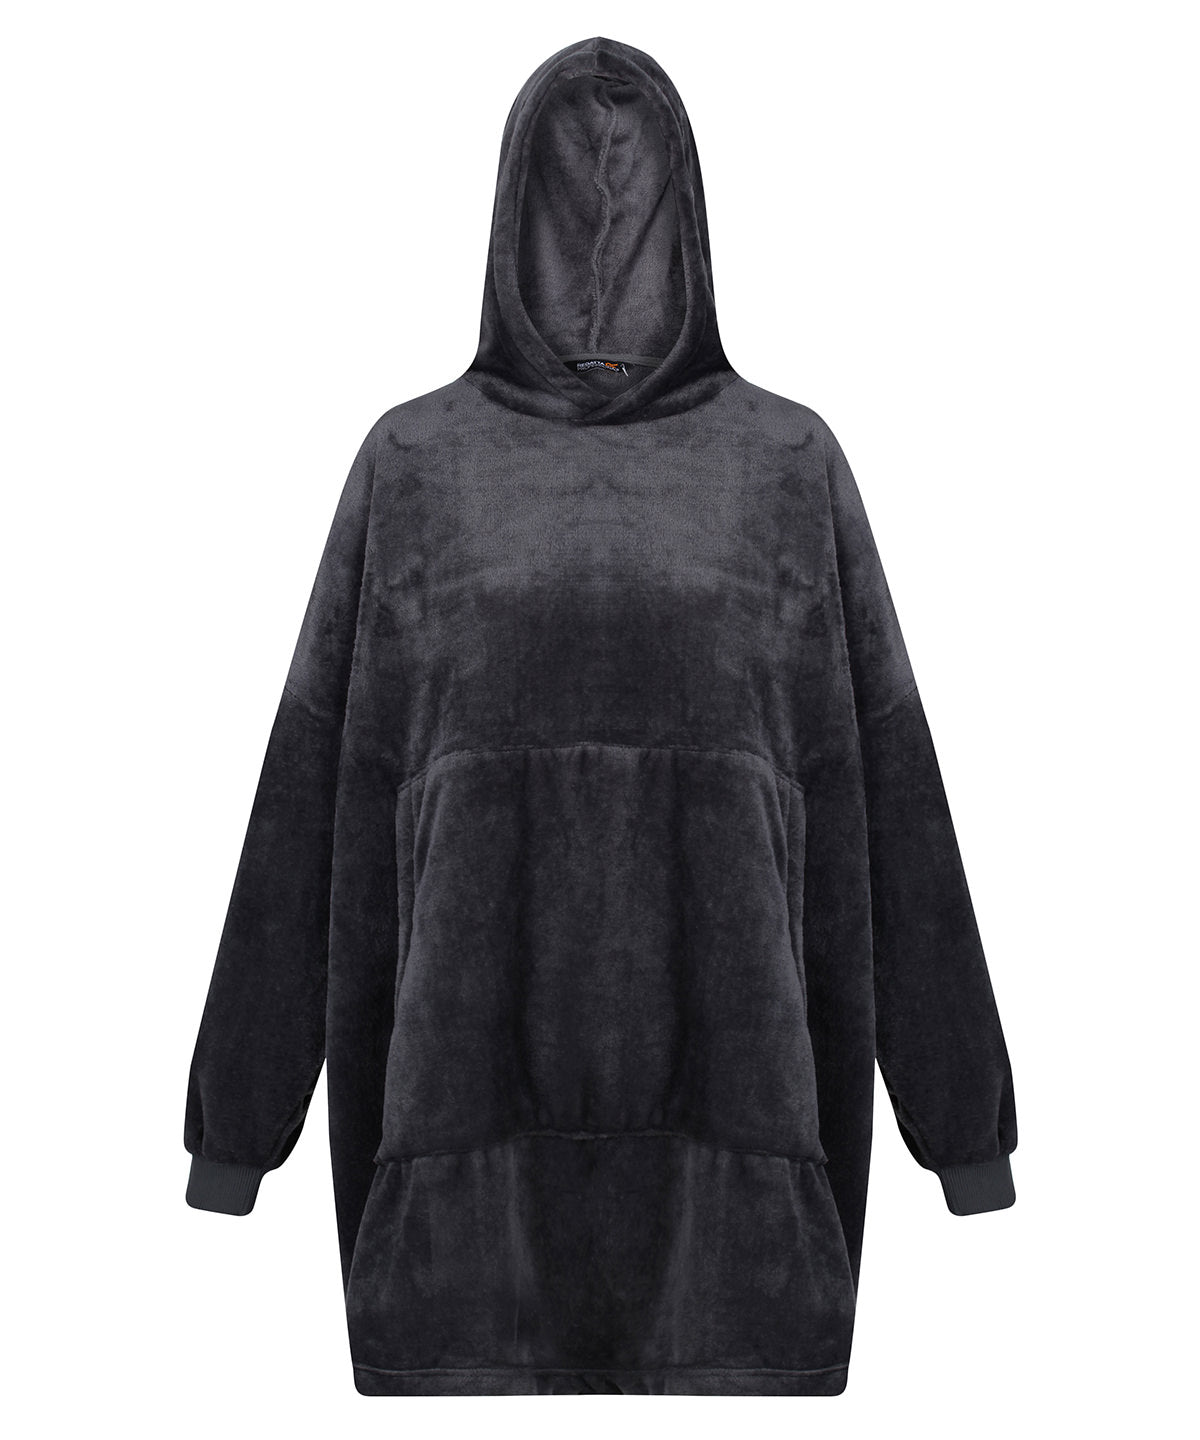 Snuggler oversized fleece hoodie